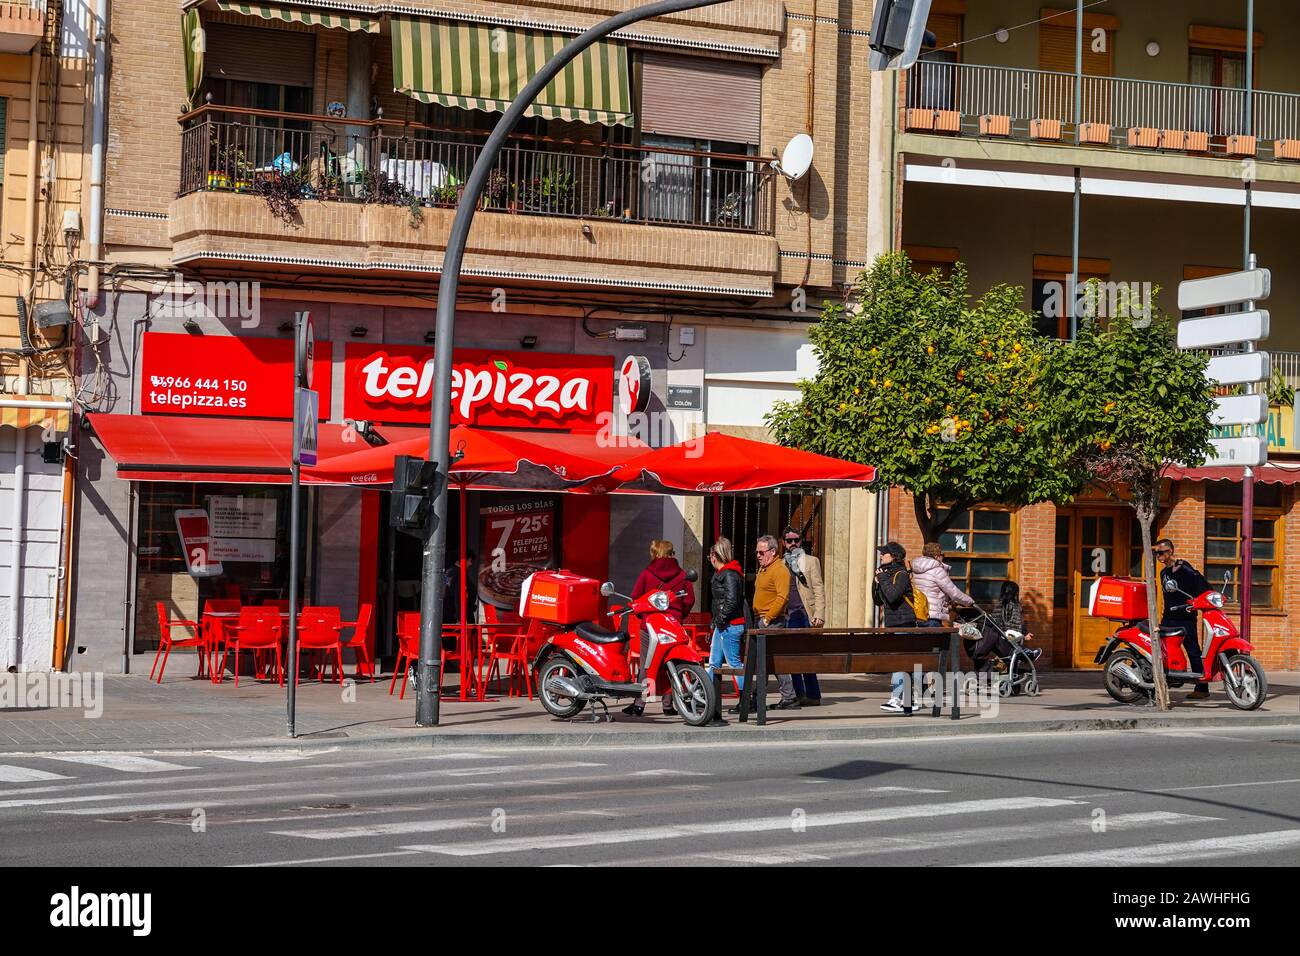 Telepizza, pizza delivery, red, scooter, Vilajoyosa, Villajoyosa, Alicante, Costa Blanca, Spain Stock Photo